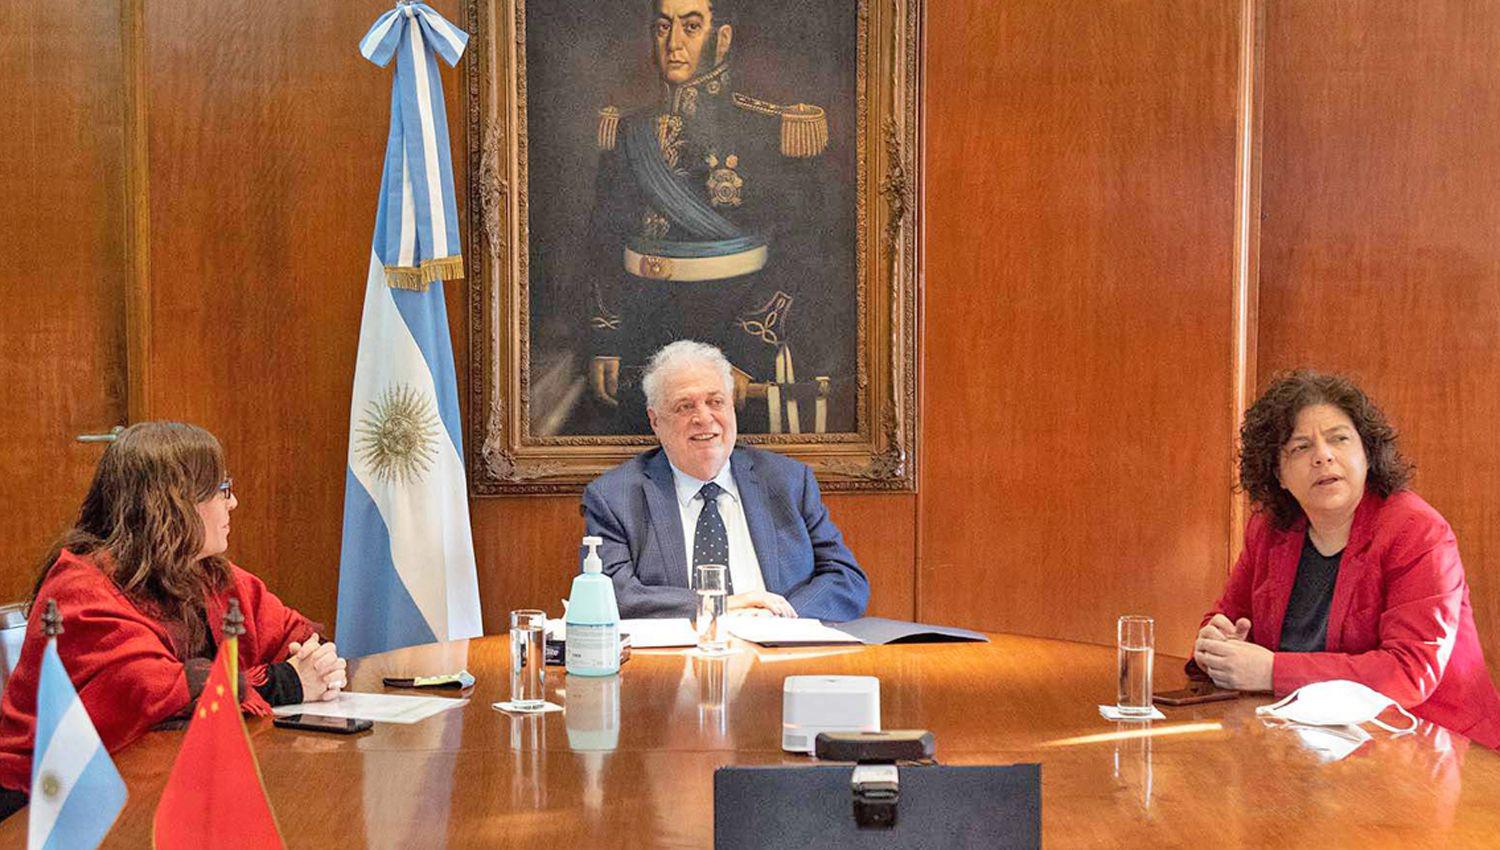 El ministro de Salud Ginés Gonz�lez García destacó el esfuerzo del país y
manifestó el orgullo argentino de contar con capacidad técnica desarrollo tecnológico y trayectoria clínica